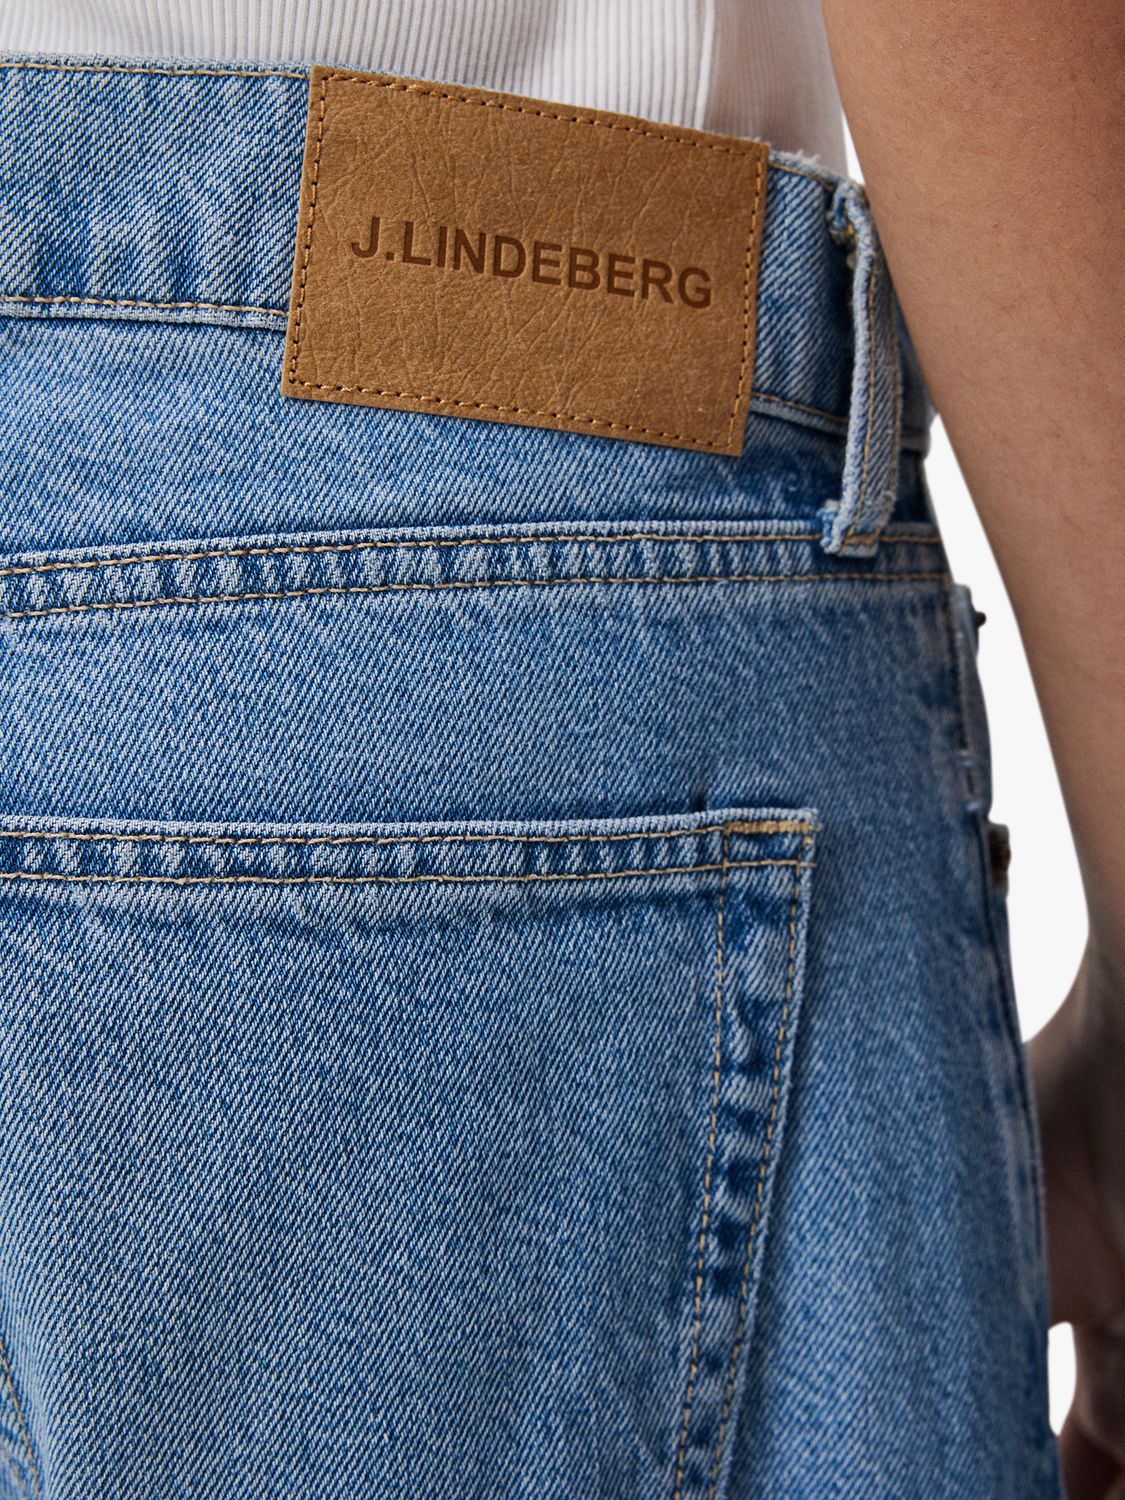 J.Lindeberg Cody Washed Regular Jeans, Light Blue, 30R